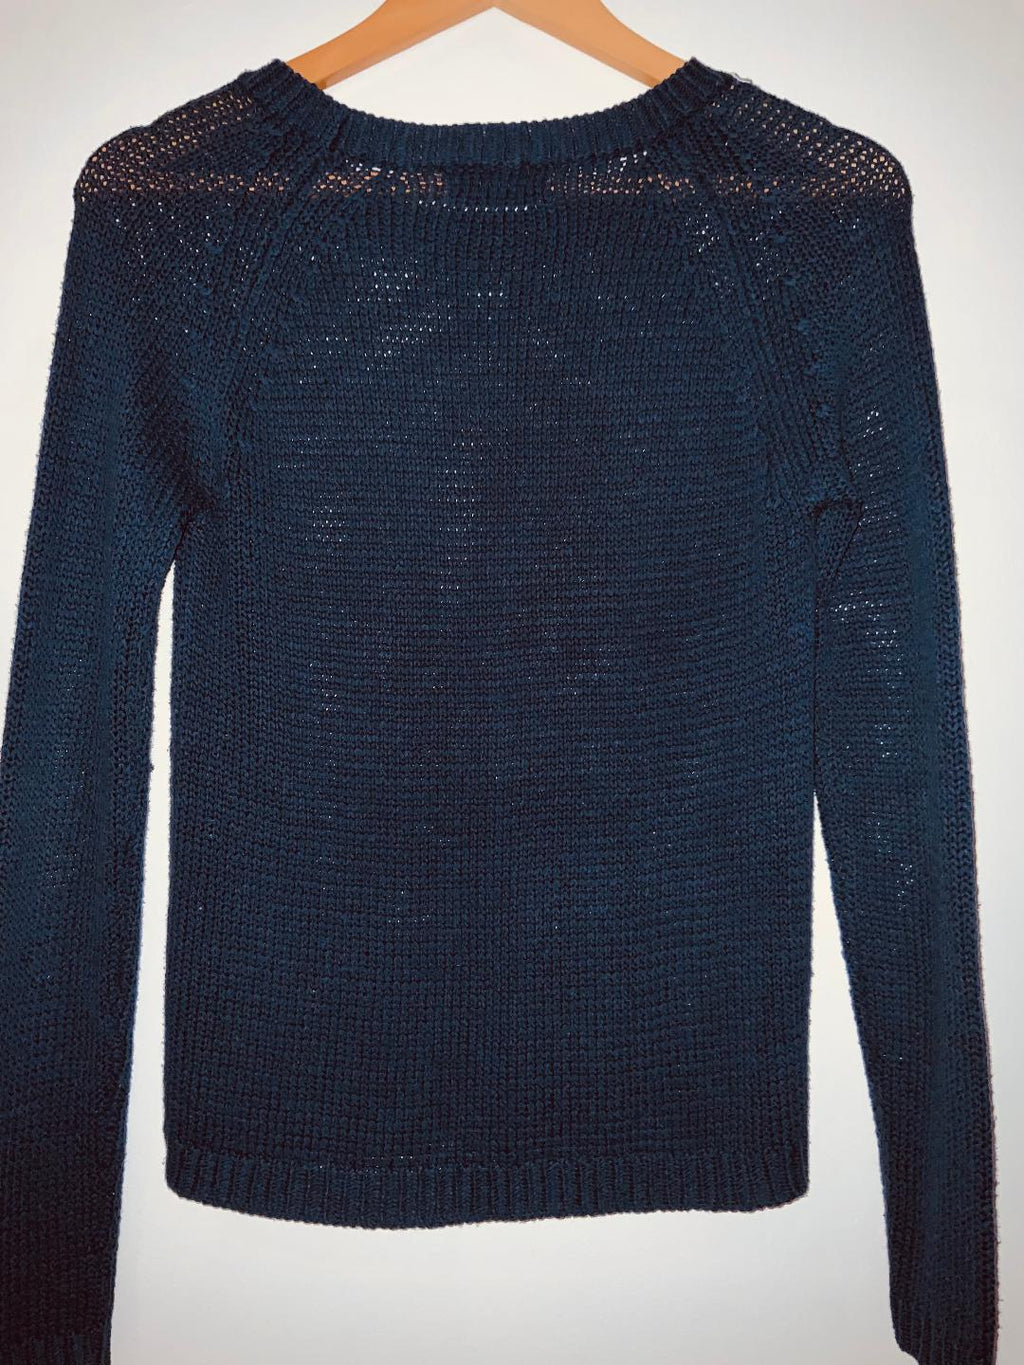 STRADIVARIUS Sweater en hilo cuello redondo. Talla S